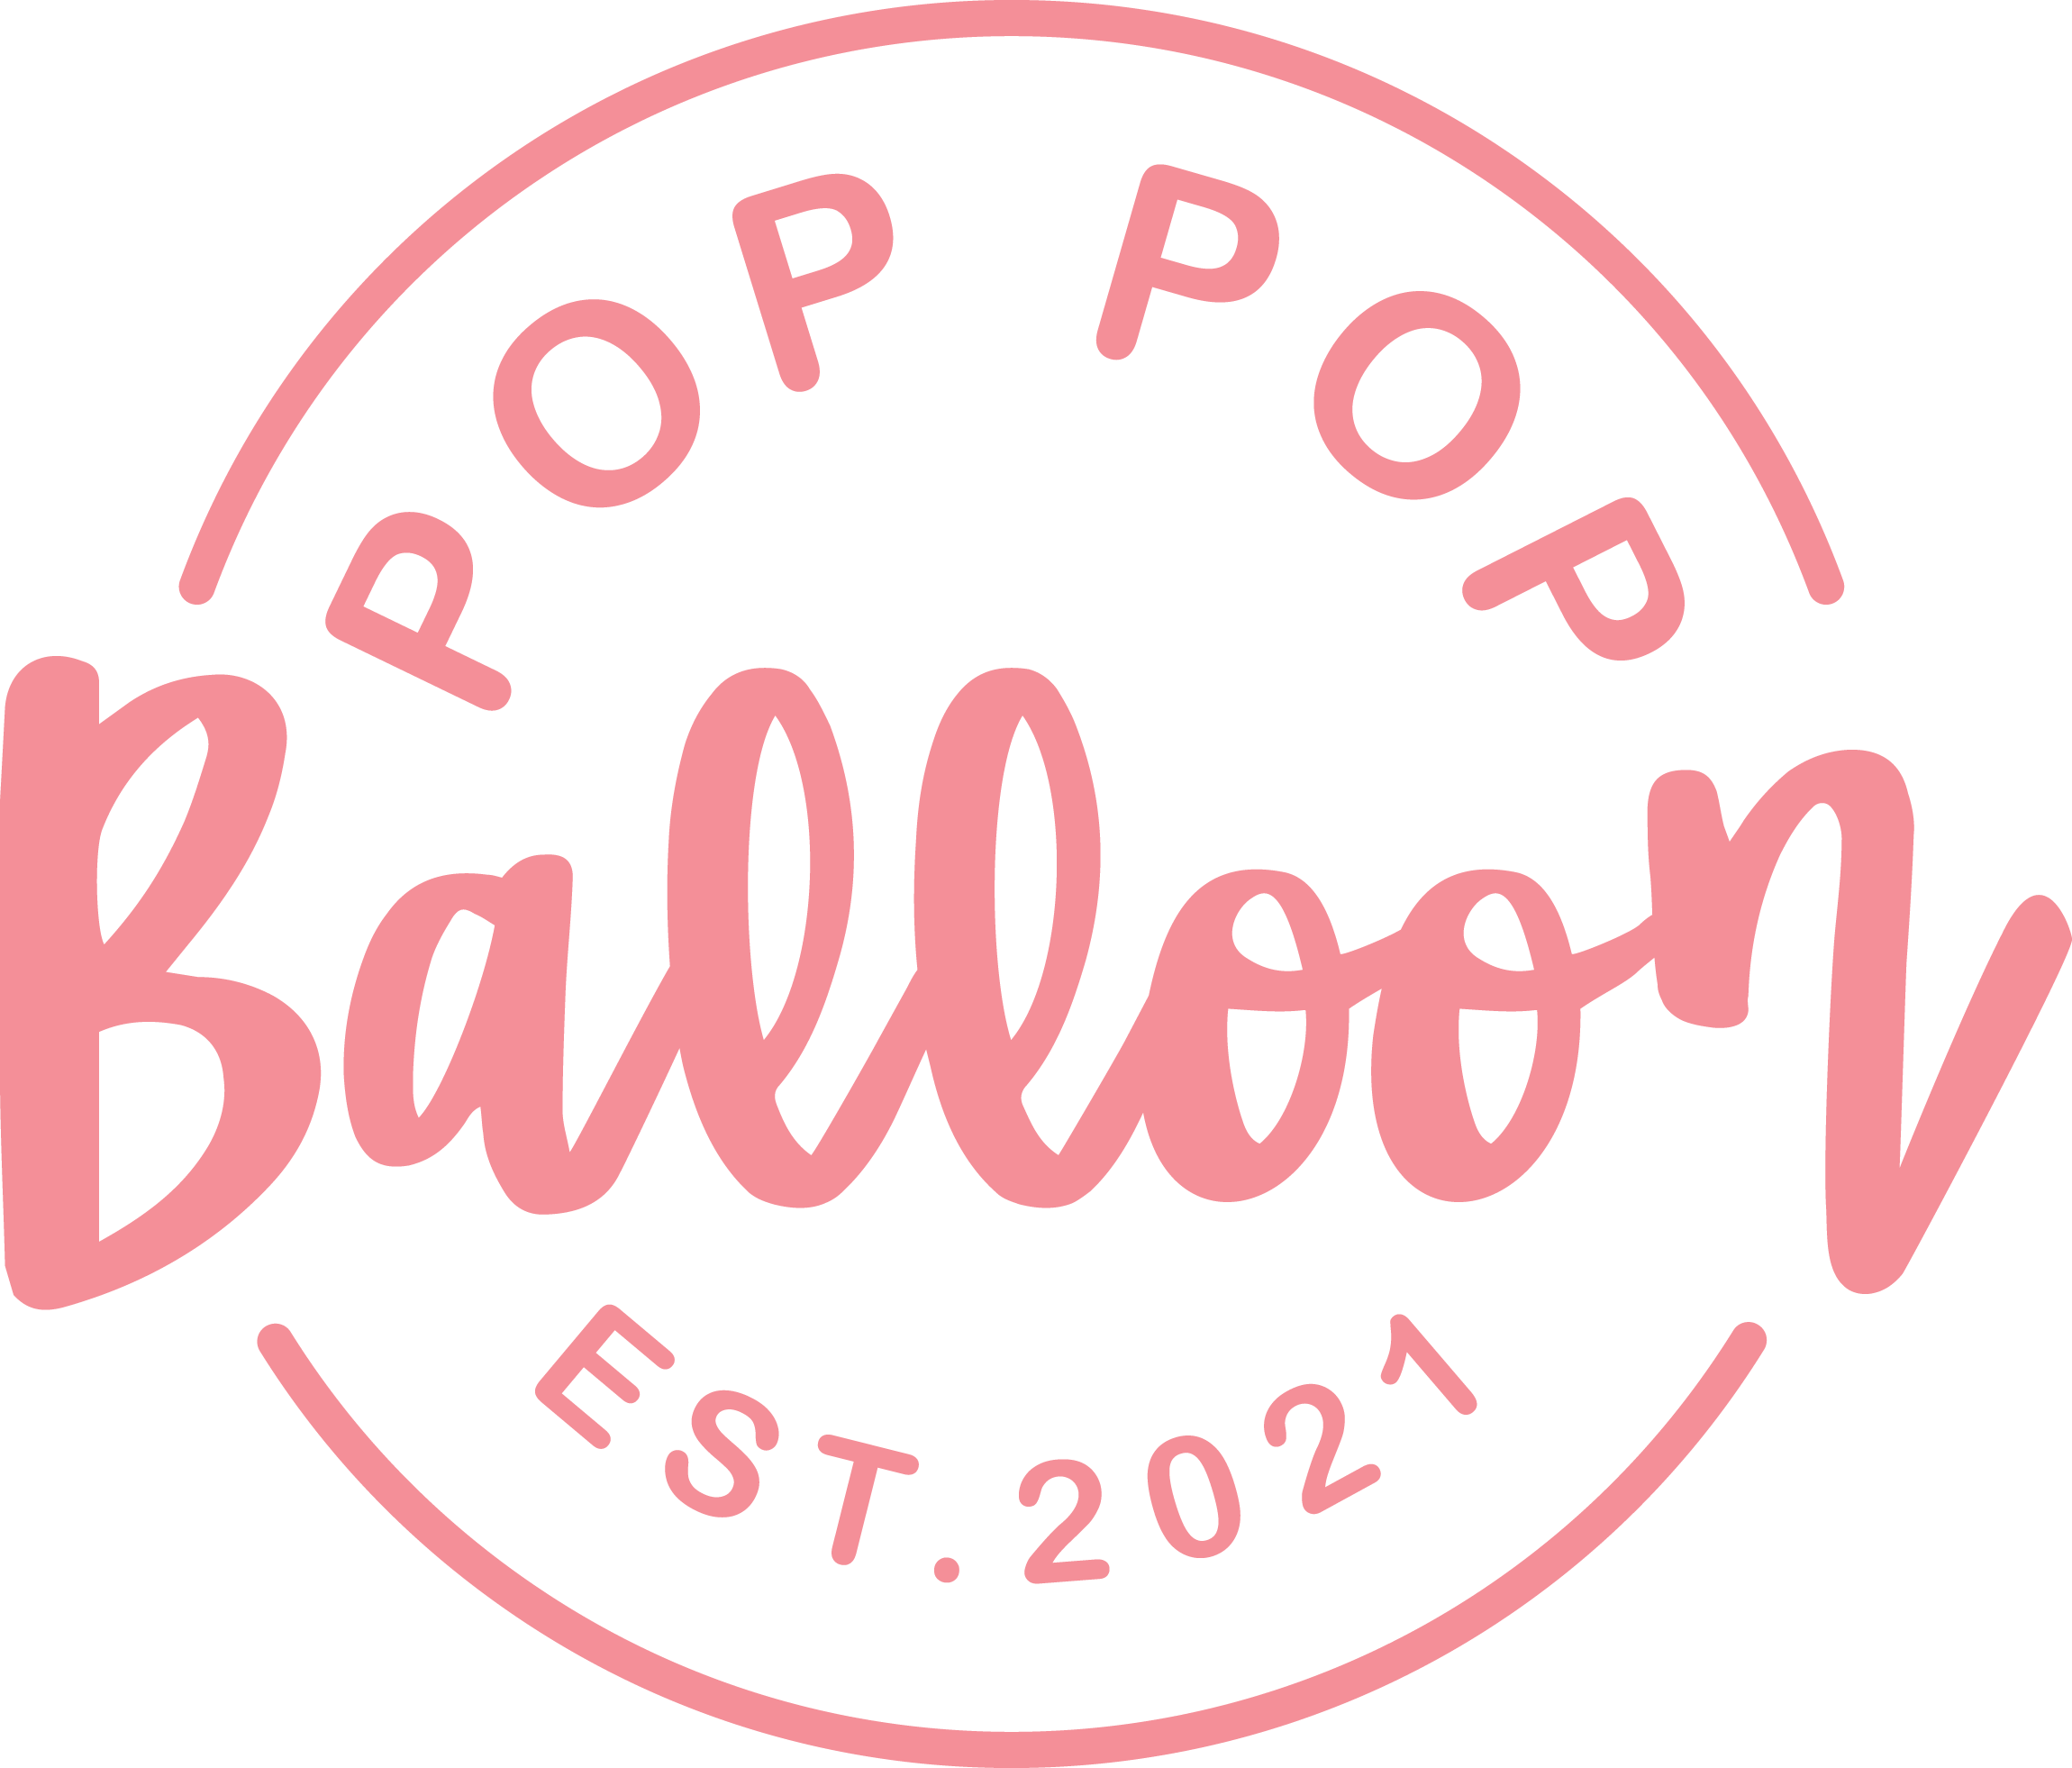 Pop Pop Balloon